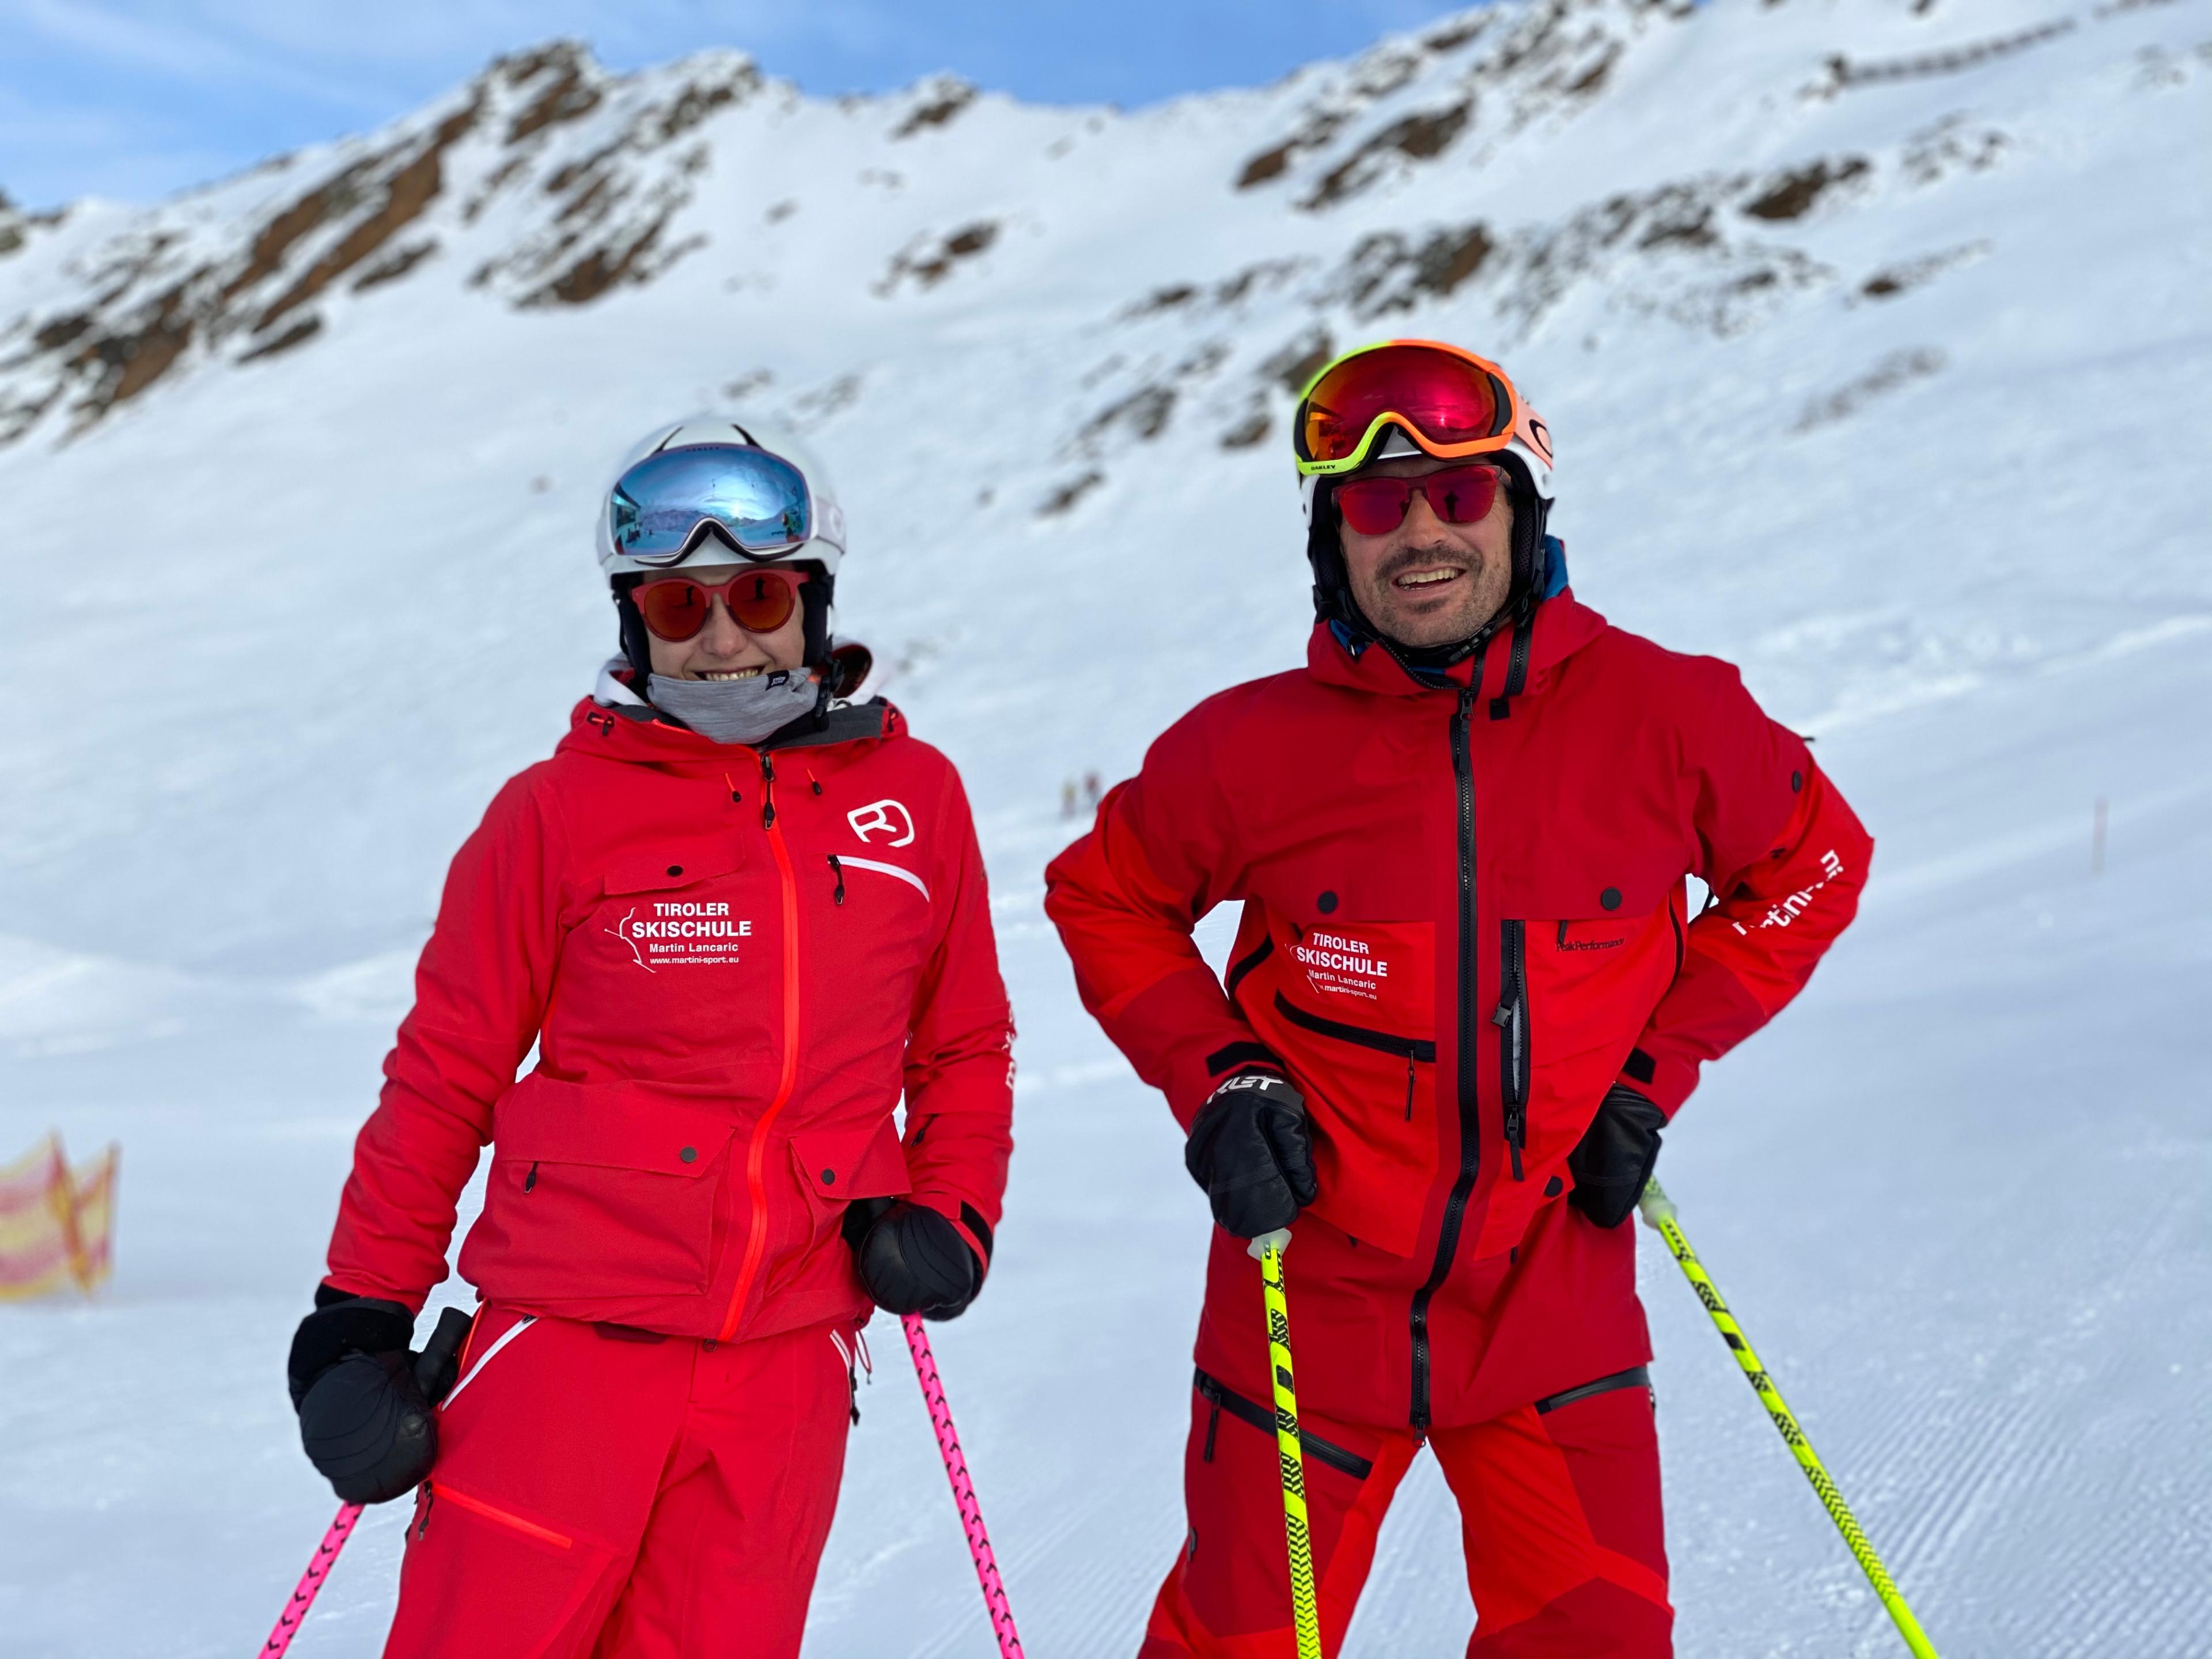 Cours particulier de ski freeride - Avancé